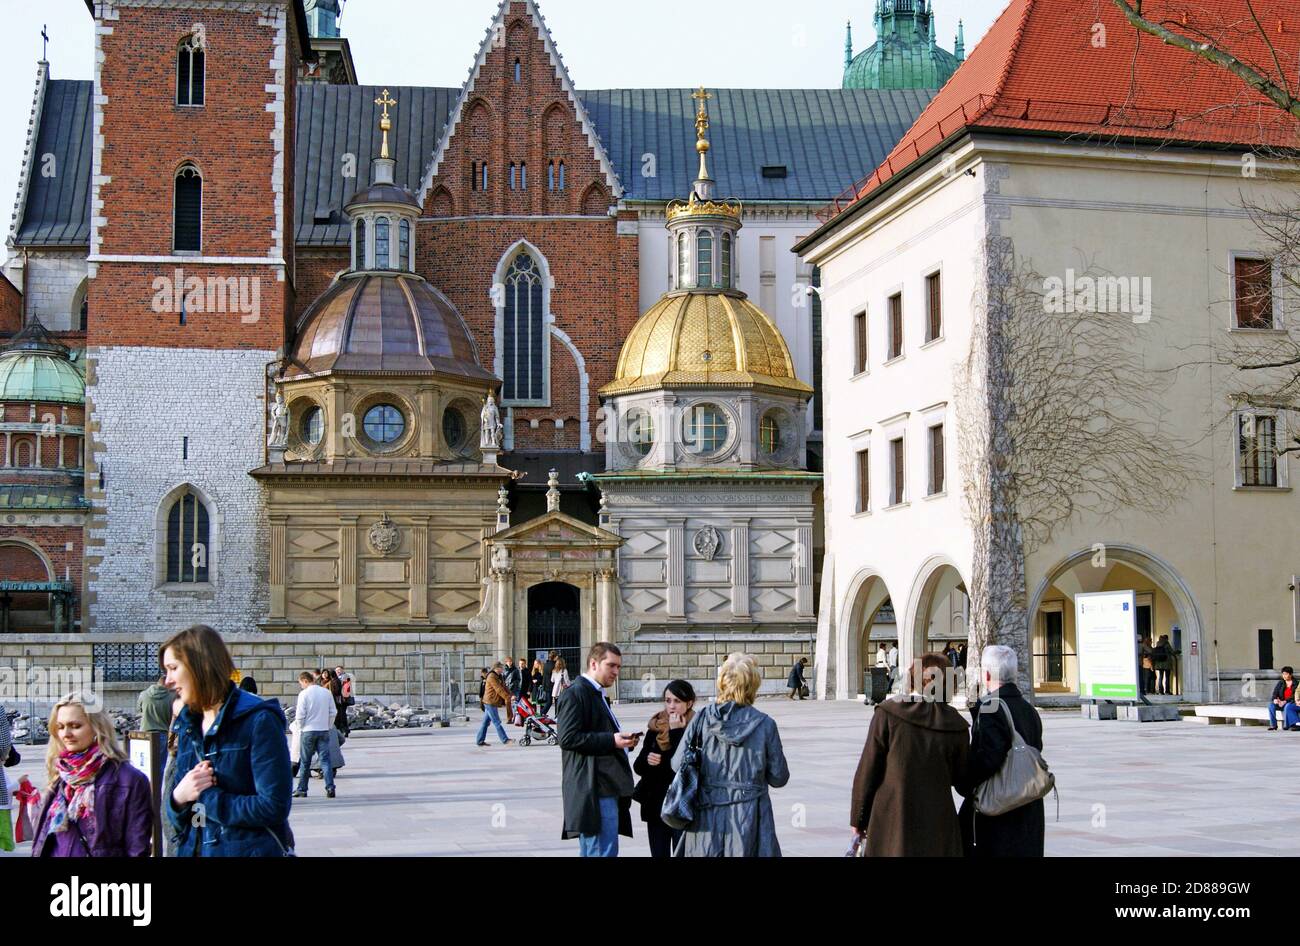 Le château royal de Wawel à Cracovie, en Pologne, est une résidence, un musée et une cathédrale de styles architecturaux variés. Banque D'Images